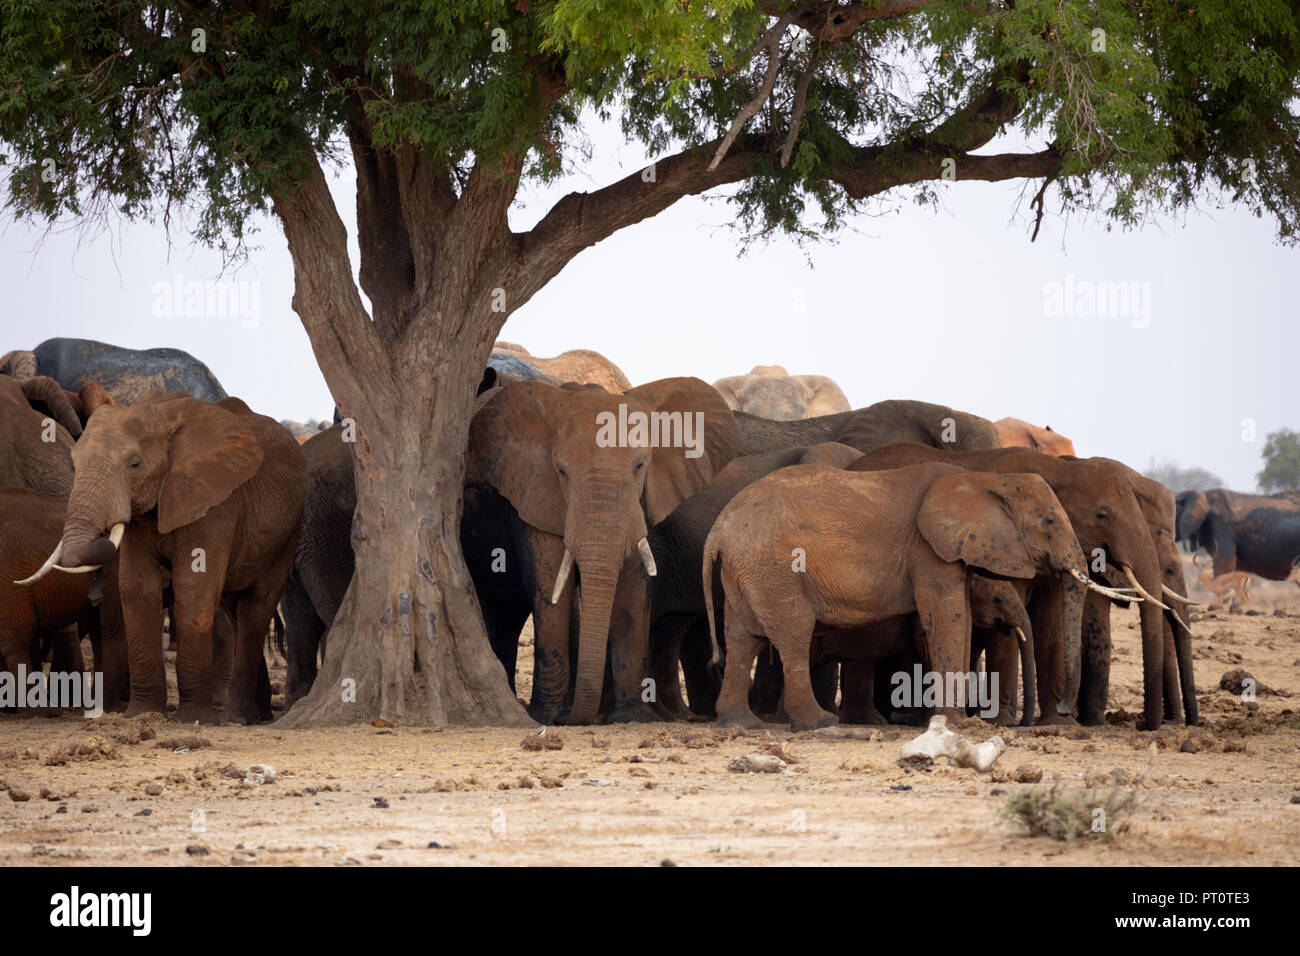 El Parque Nacional de Tsavo East, Kenya, AFRICA: una manada de elefantes africanos de pie bajo la sombra de un árbol en la sabana en tarde de sol Foto de stock